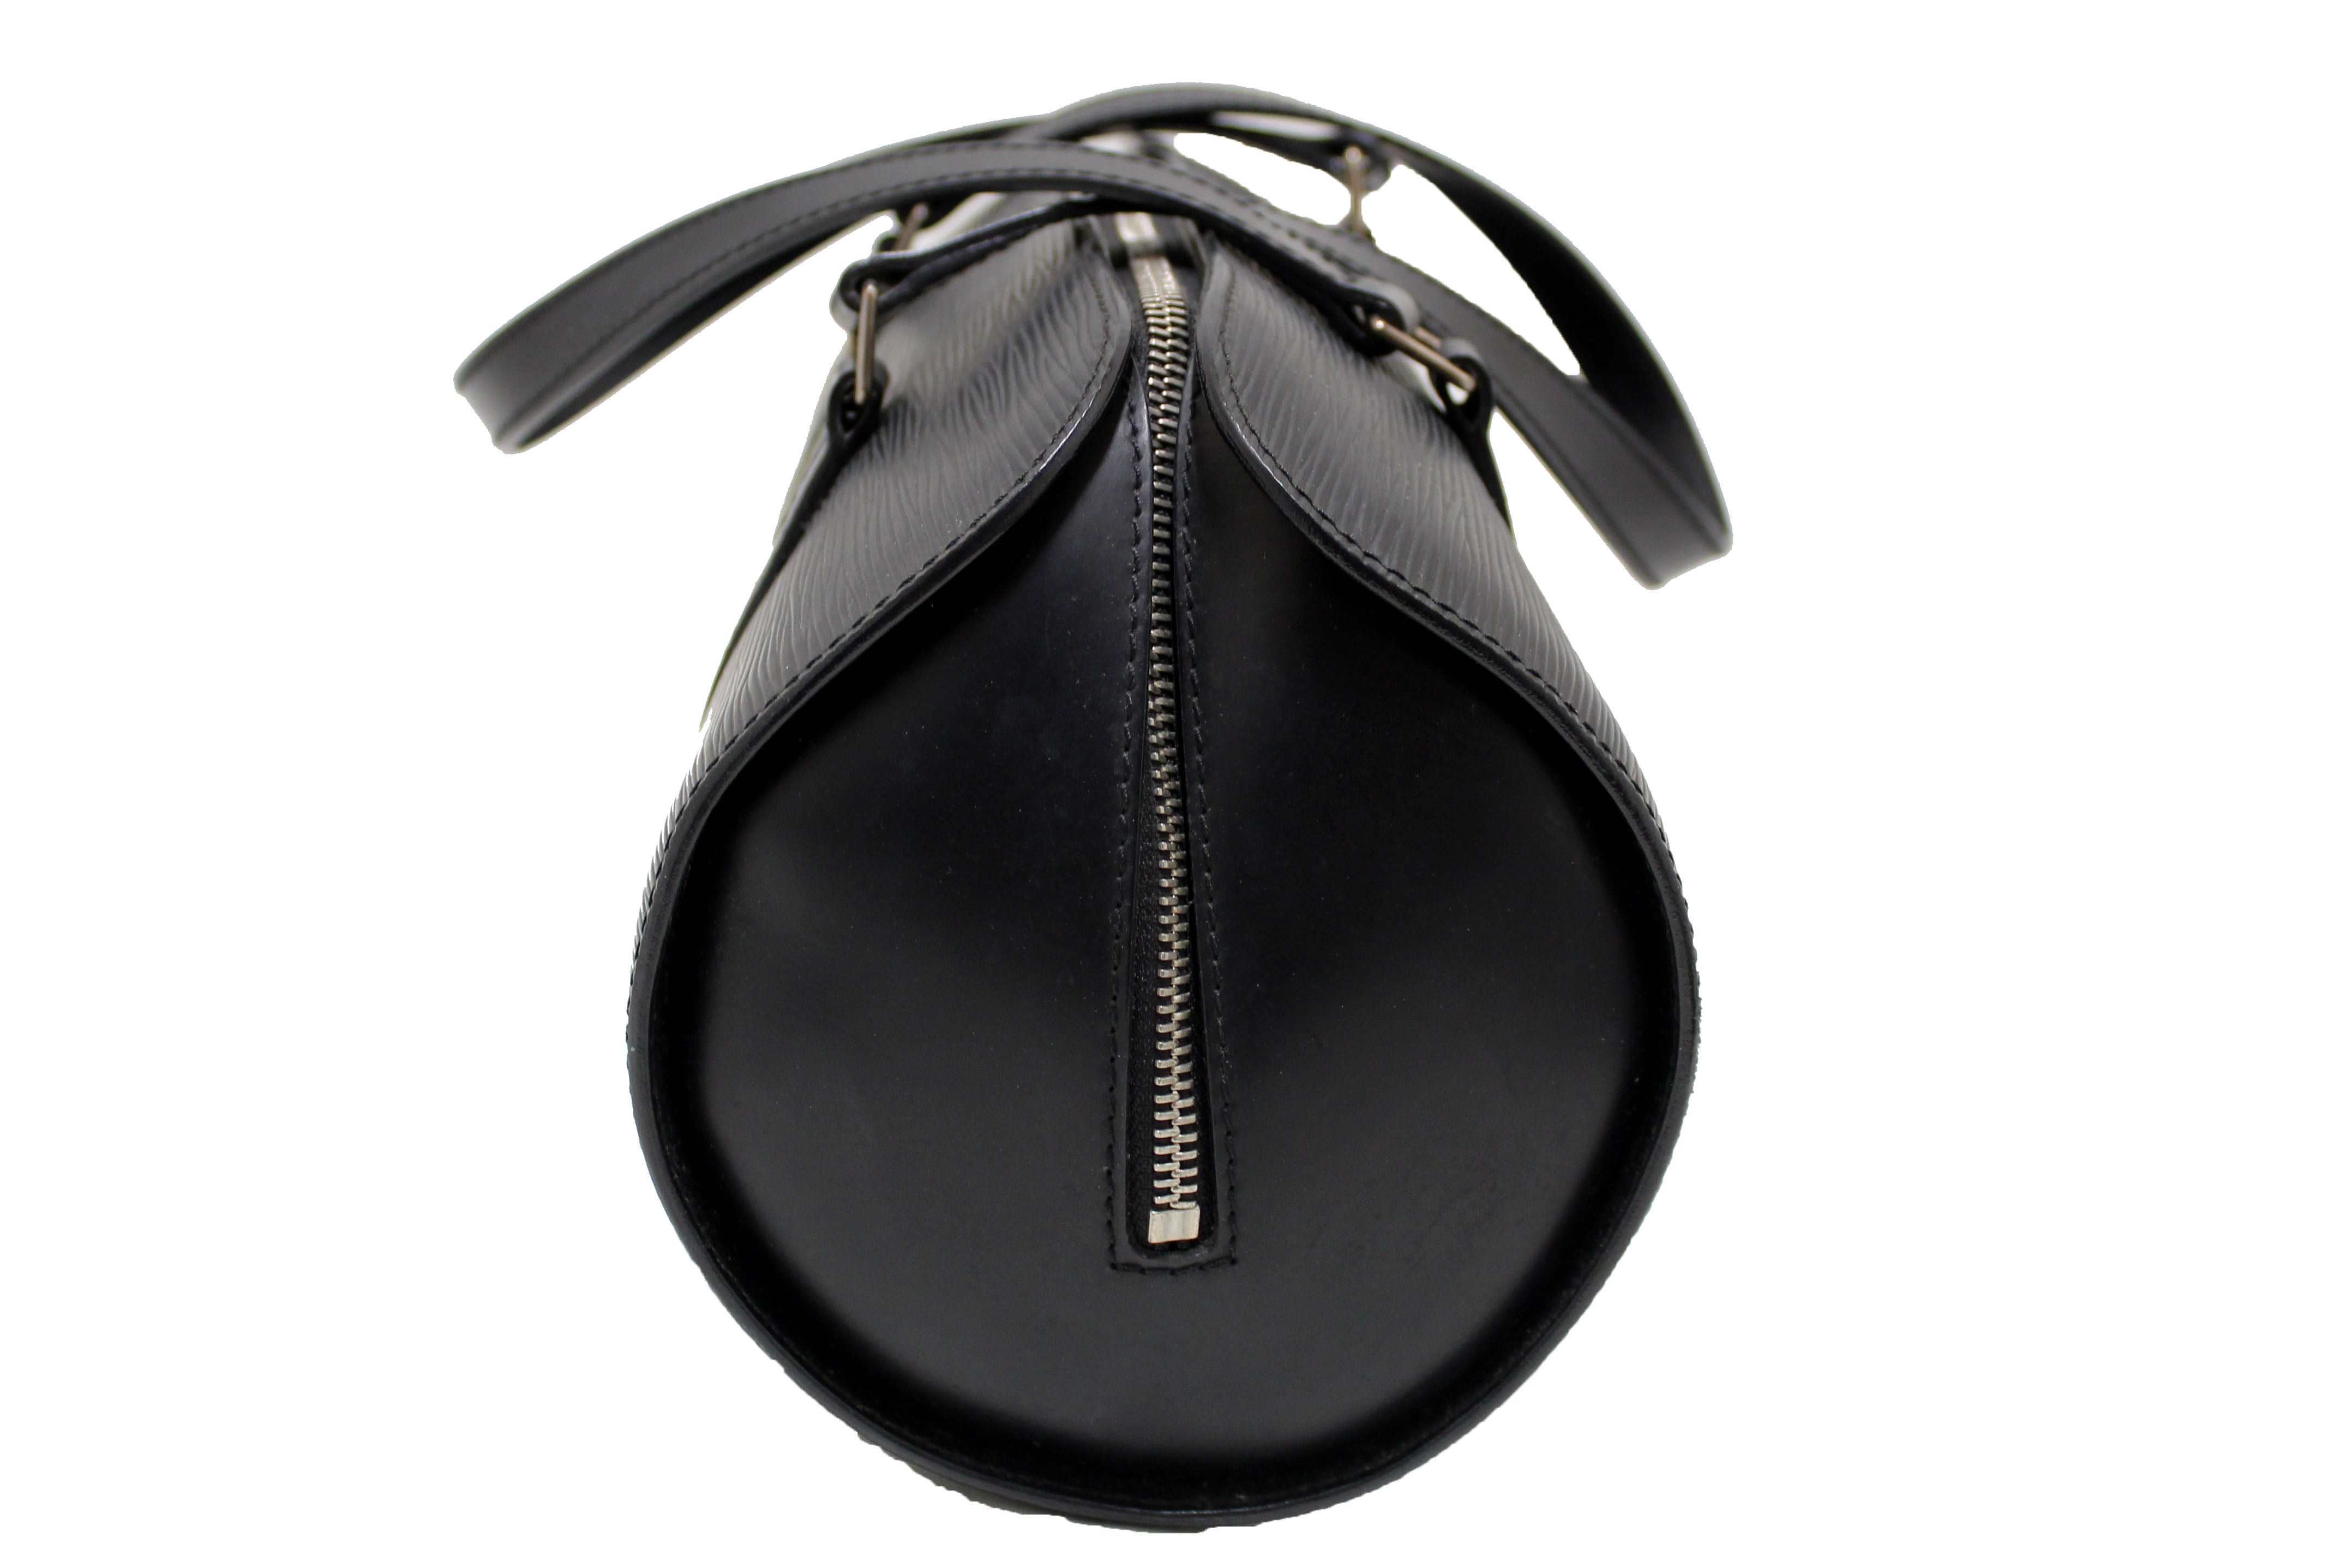 Authentic Louis Vuitton Black Epi Leather Soufflot Handbag With Mini Bag